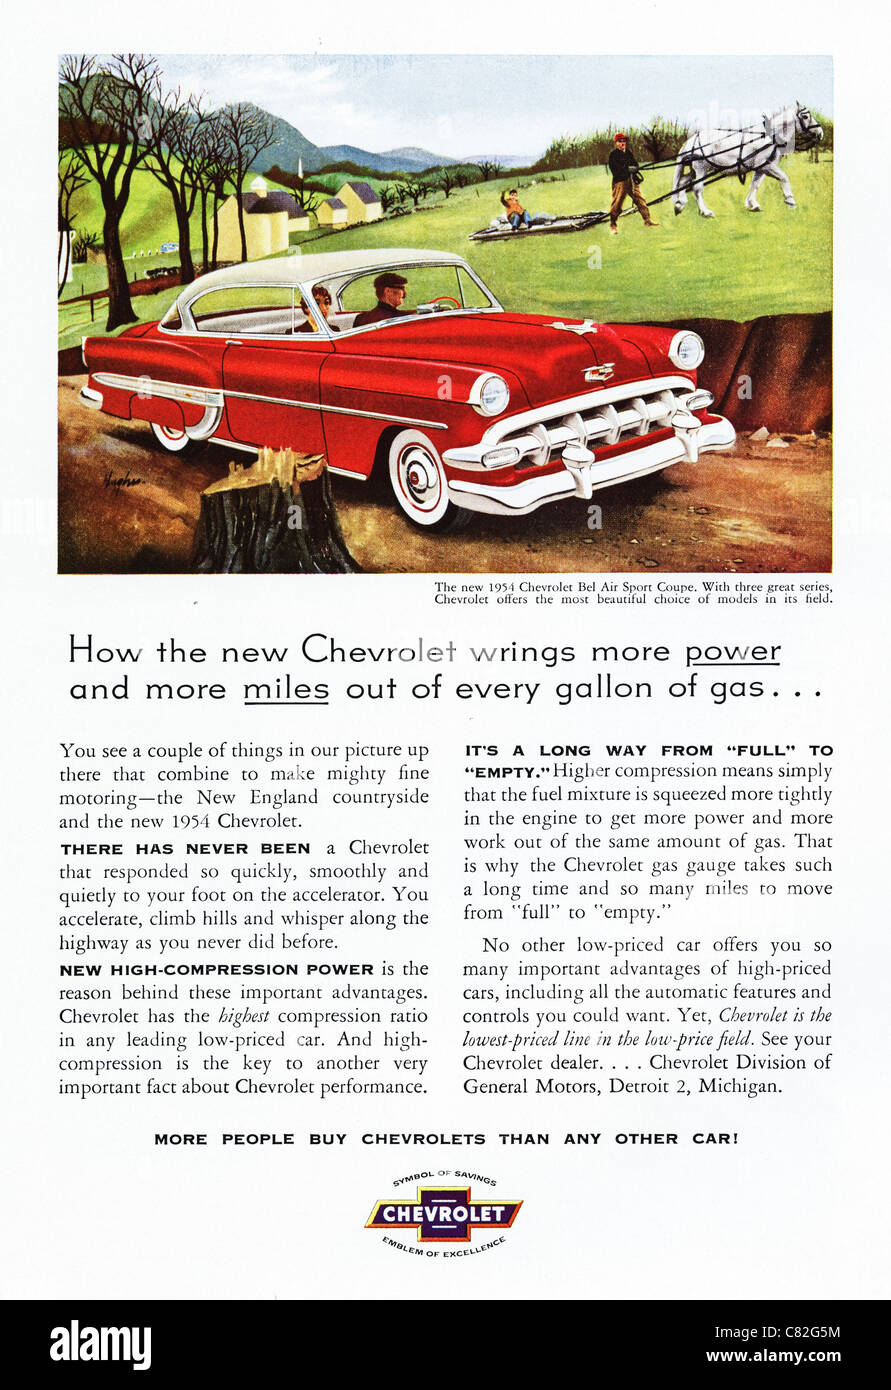 Publicité dans un magazine américain vers 1954 publicité véhicules Chevrolet Banque D'Images